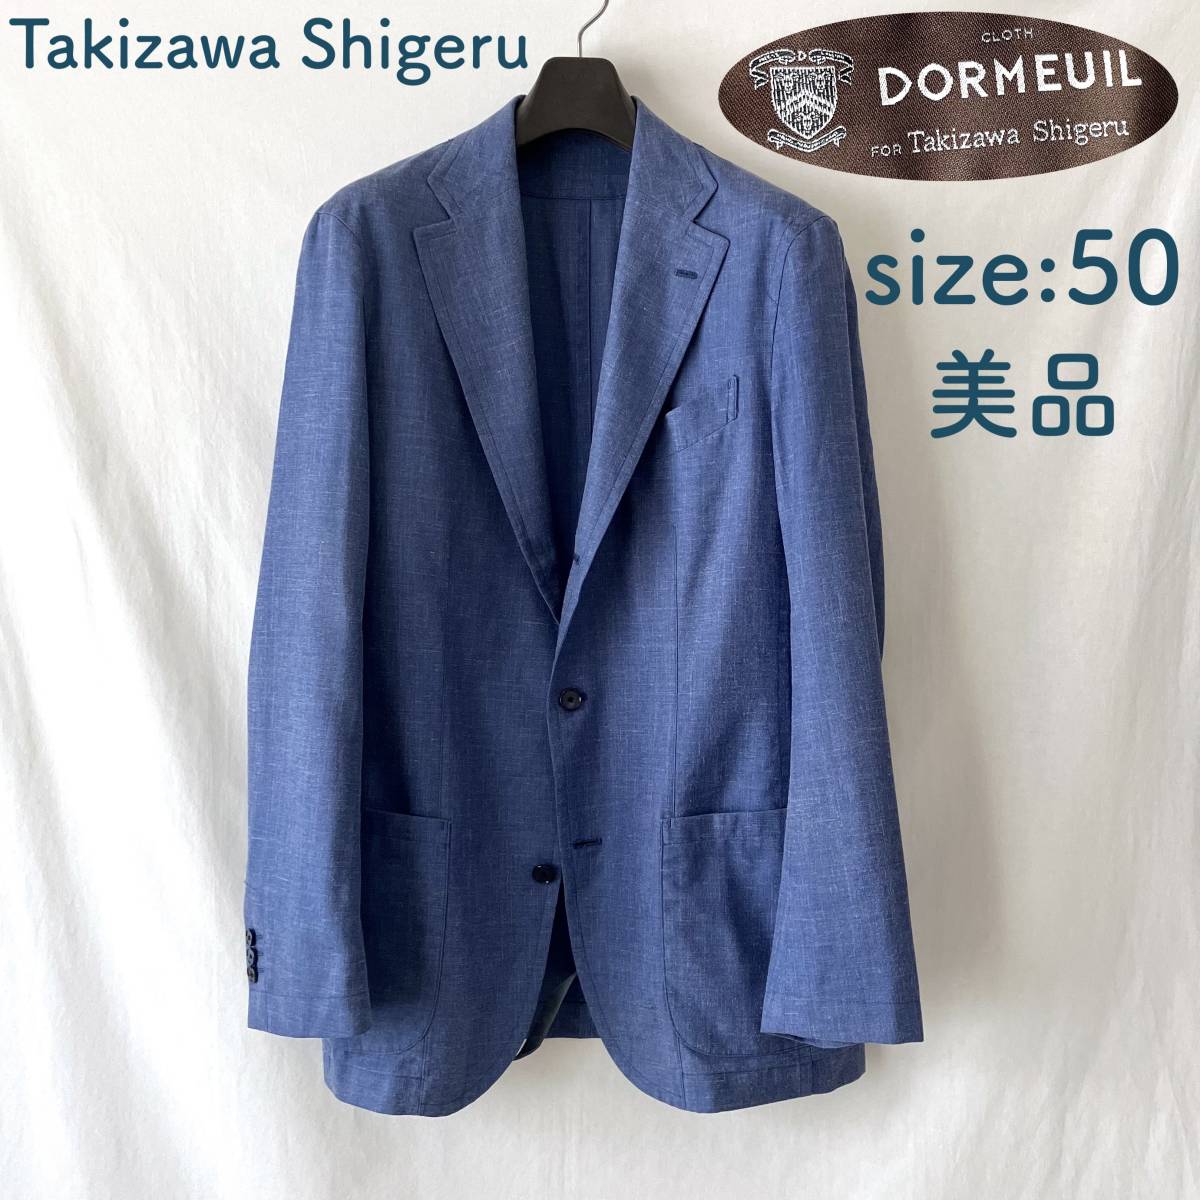 ■ 美品 ■ Takizawa Shigeru ■ ジャケット ■ DORMEUIL 別注 ■ comfort ■ サイズ50 ■ ウール シルク リネン ■ タキザワシゲル ■ /